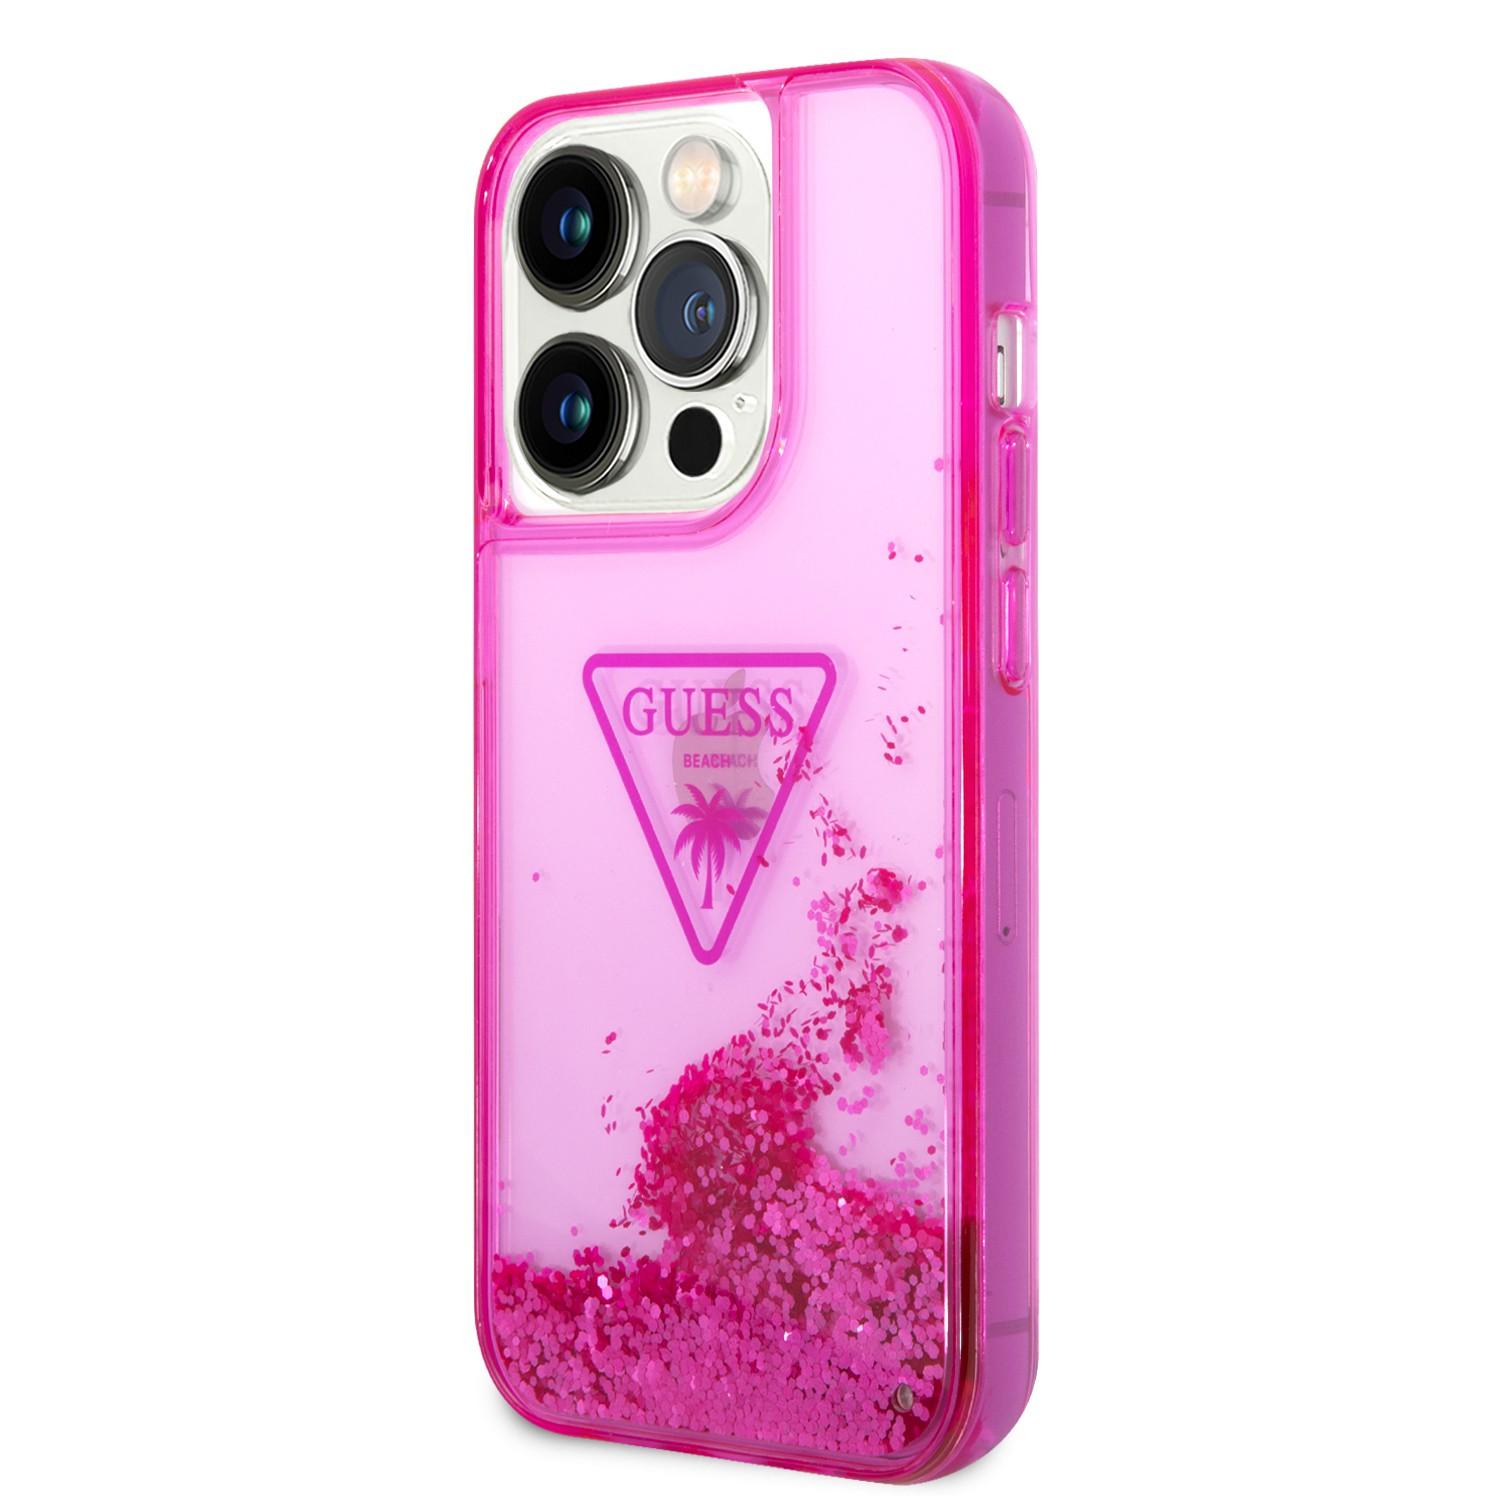 كفر ايفون 14 برو زهر جيس Guess Liquid Glitter Case With Translucent Triangle Logo For iPhone 14 Pro Pink - cG9zdDoxMzg0OTM5